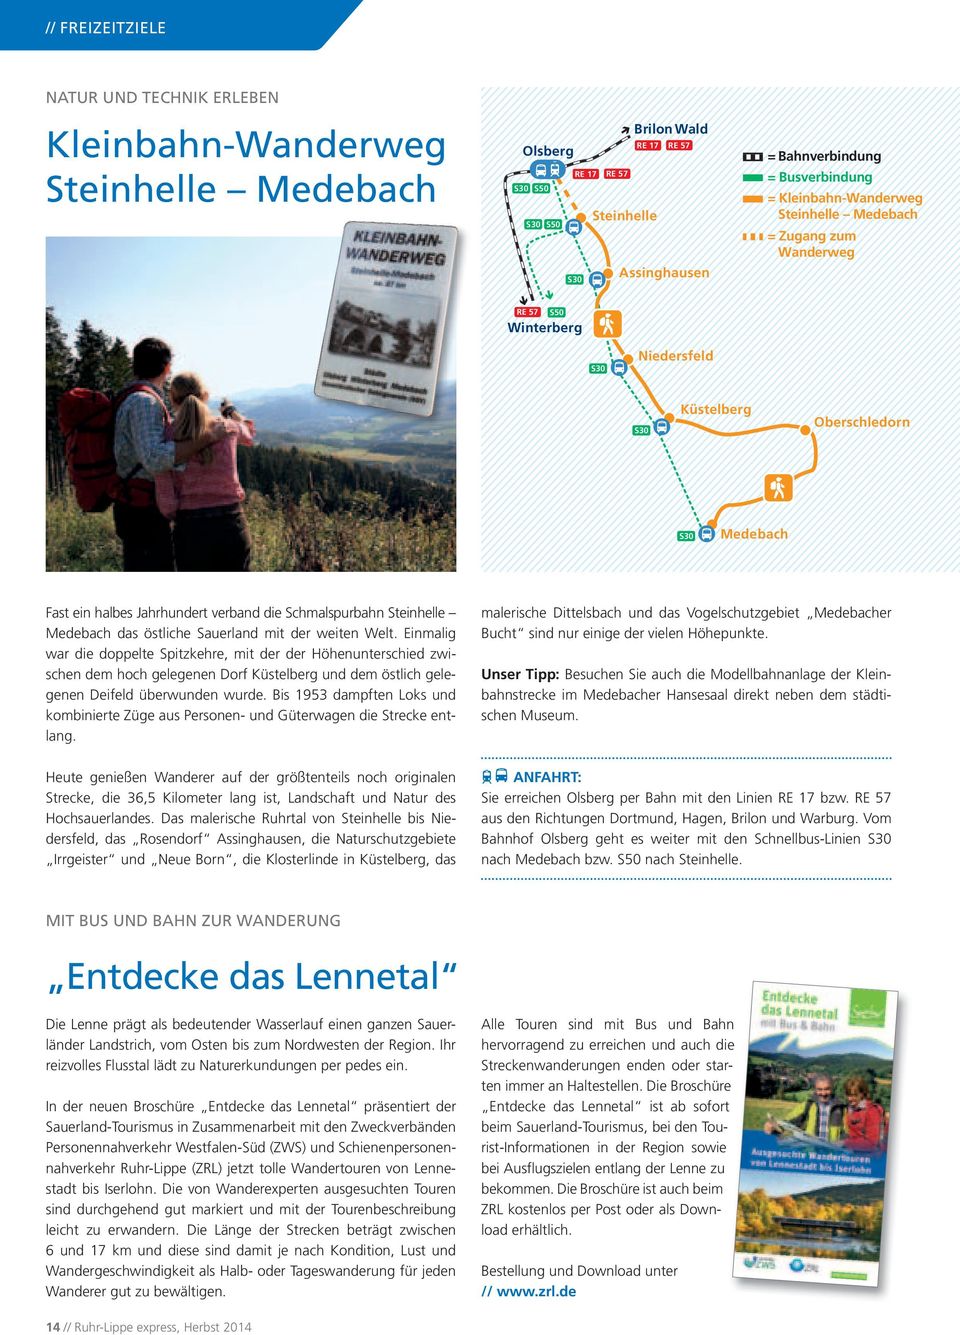 Schmalspurbahn Steinhelle Medebach das östliche Sauerland mit der weiten Welt.